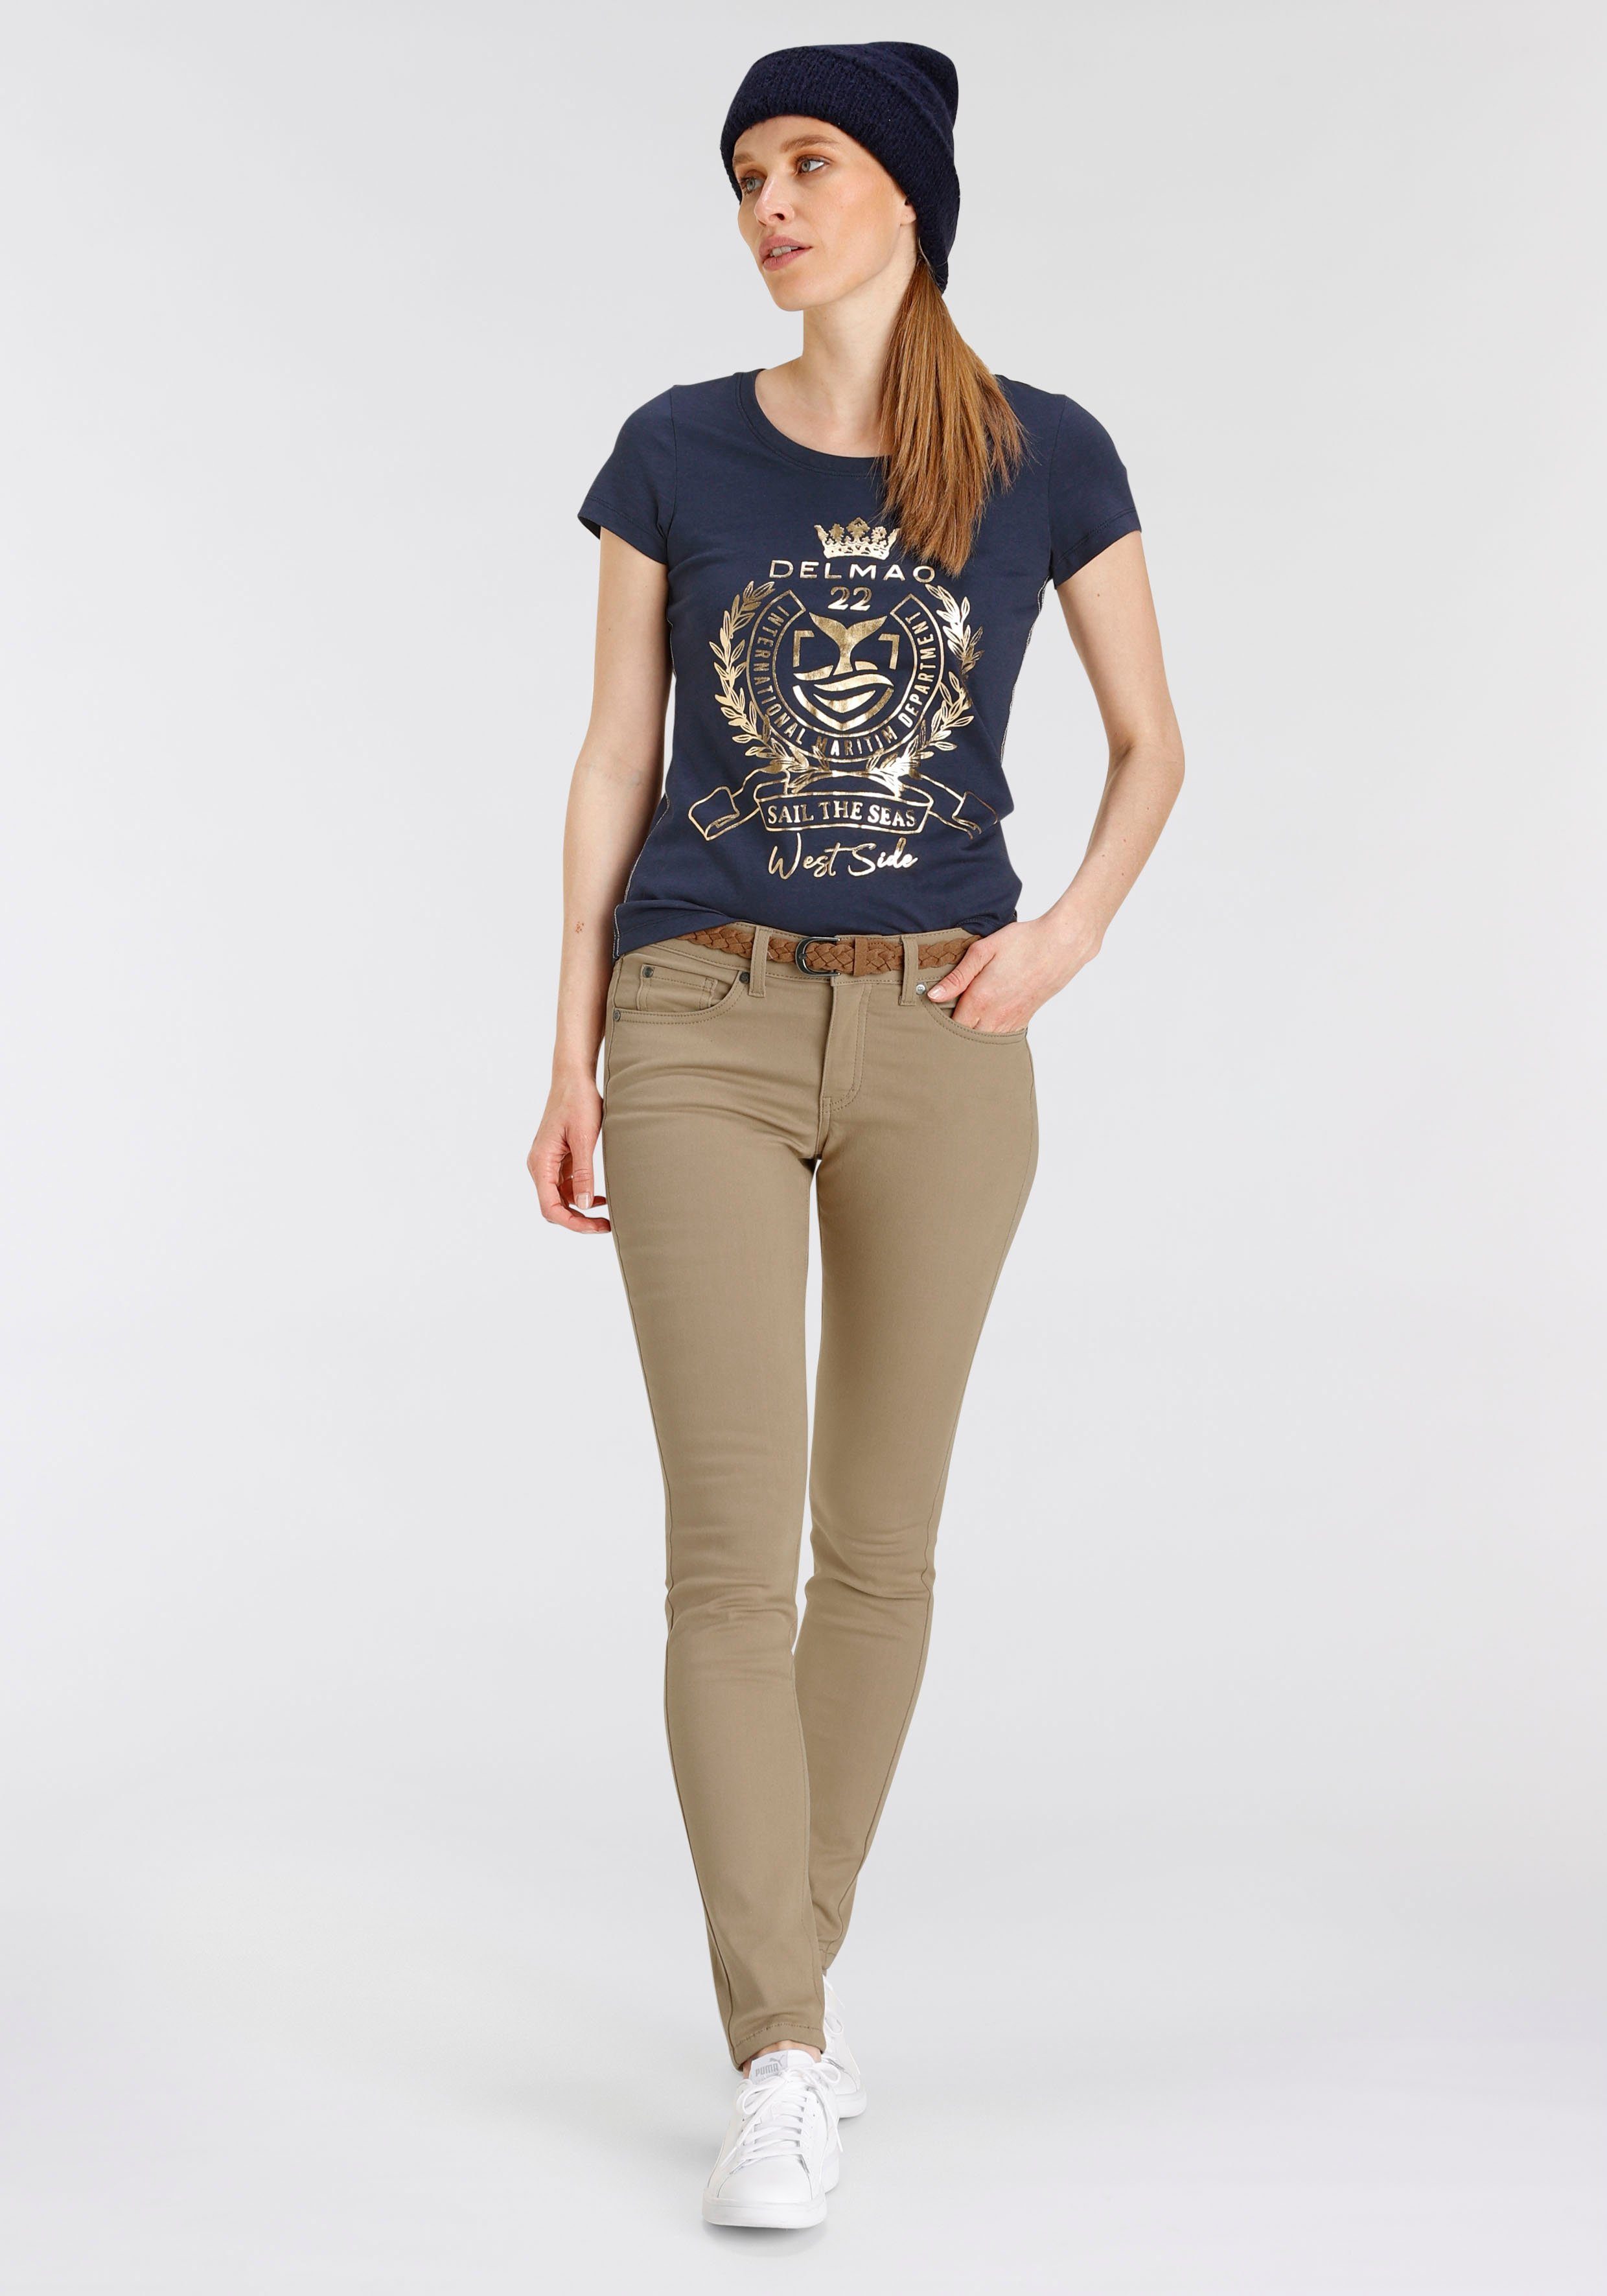 DELMAO T-Shirt mit hochwertigem, goldfarbenem Folienprint MARKE! NEUE 